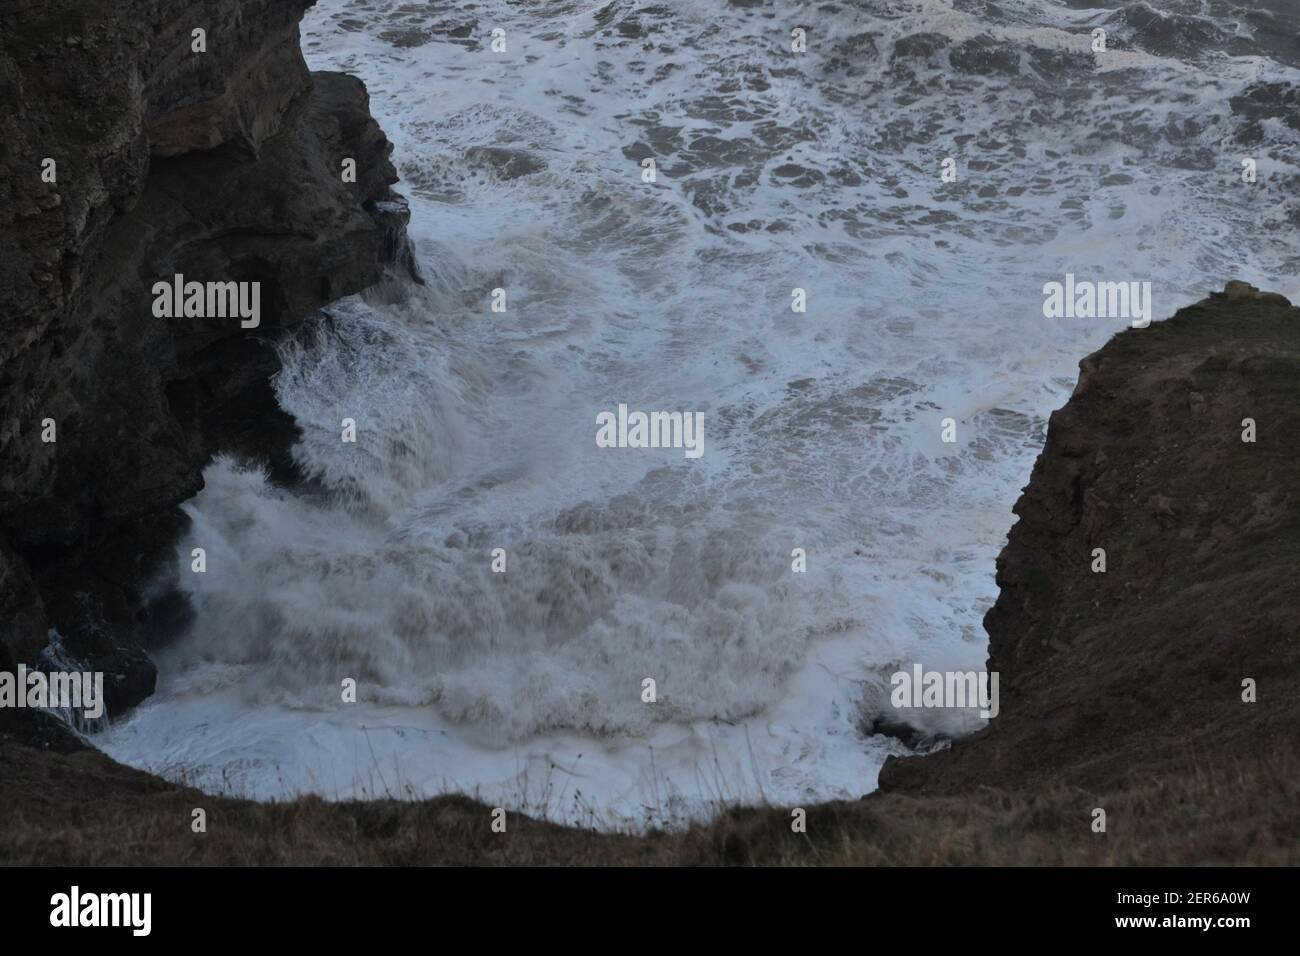 Raue See - Wilde Und Windigen Nordsee - Filey Brigg - Nordsee - Weißwasser - Krachende Wellen - Winter - Yorkshire - UK Stockfoto